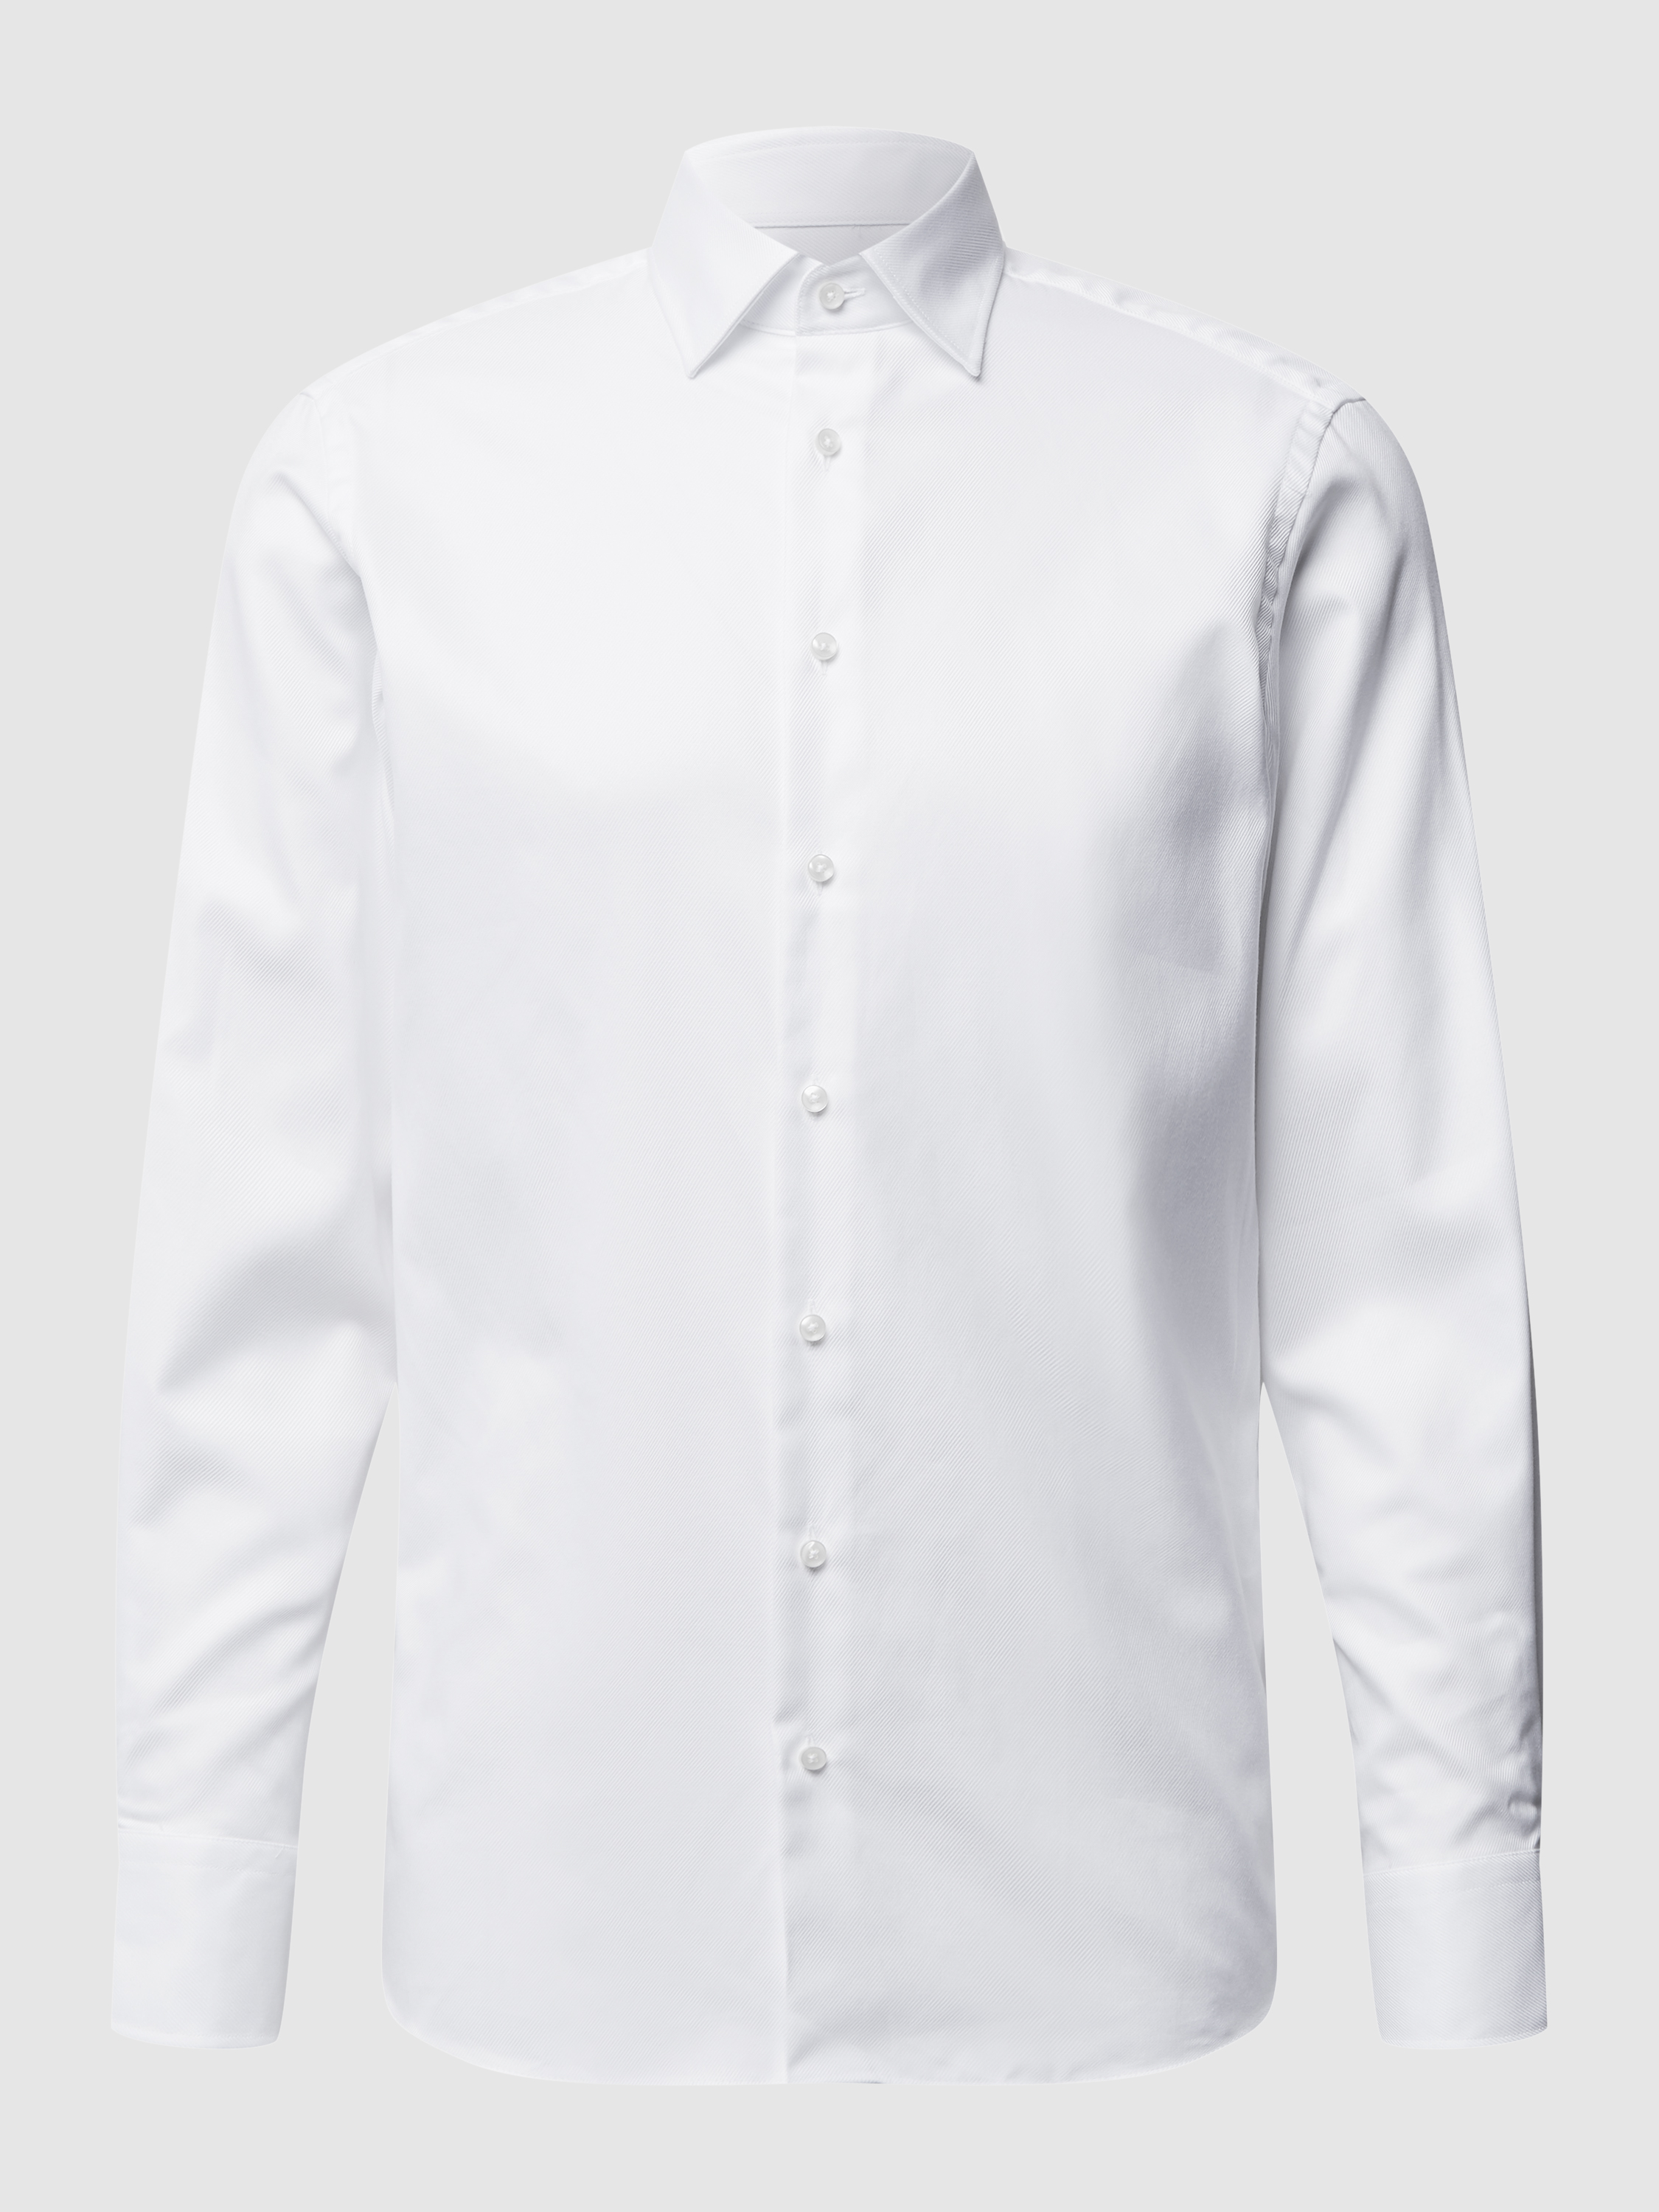 Рубашка мужская Christian Berg Men 1117302 белая 43/44 (доставка из-за рубежа)